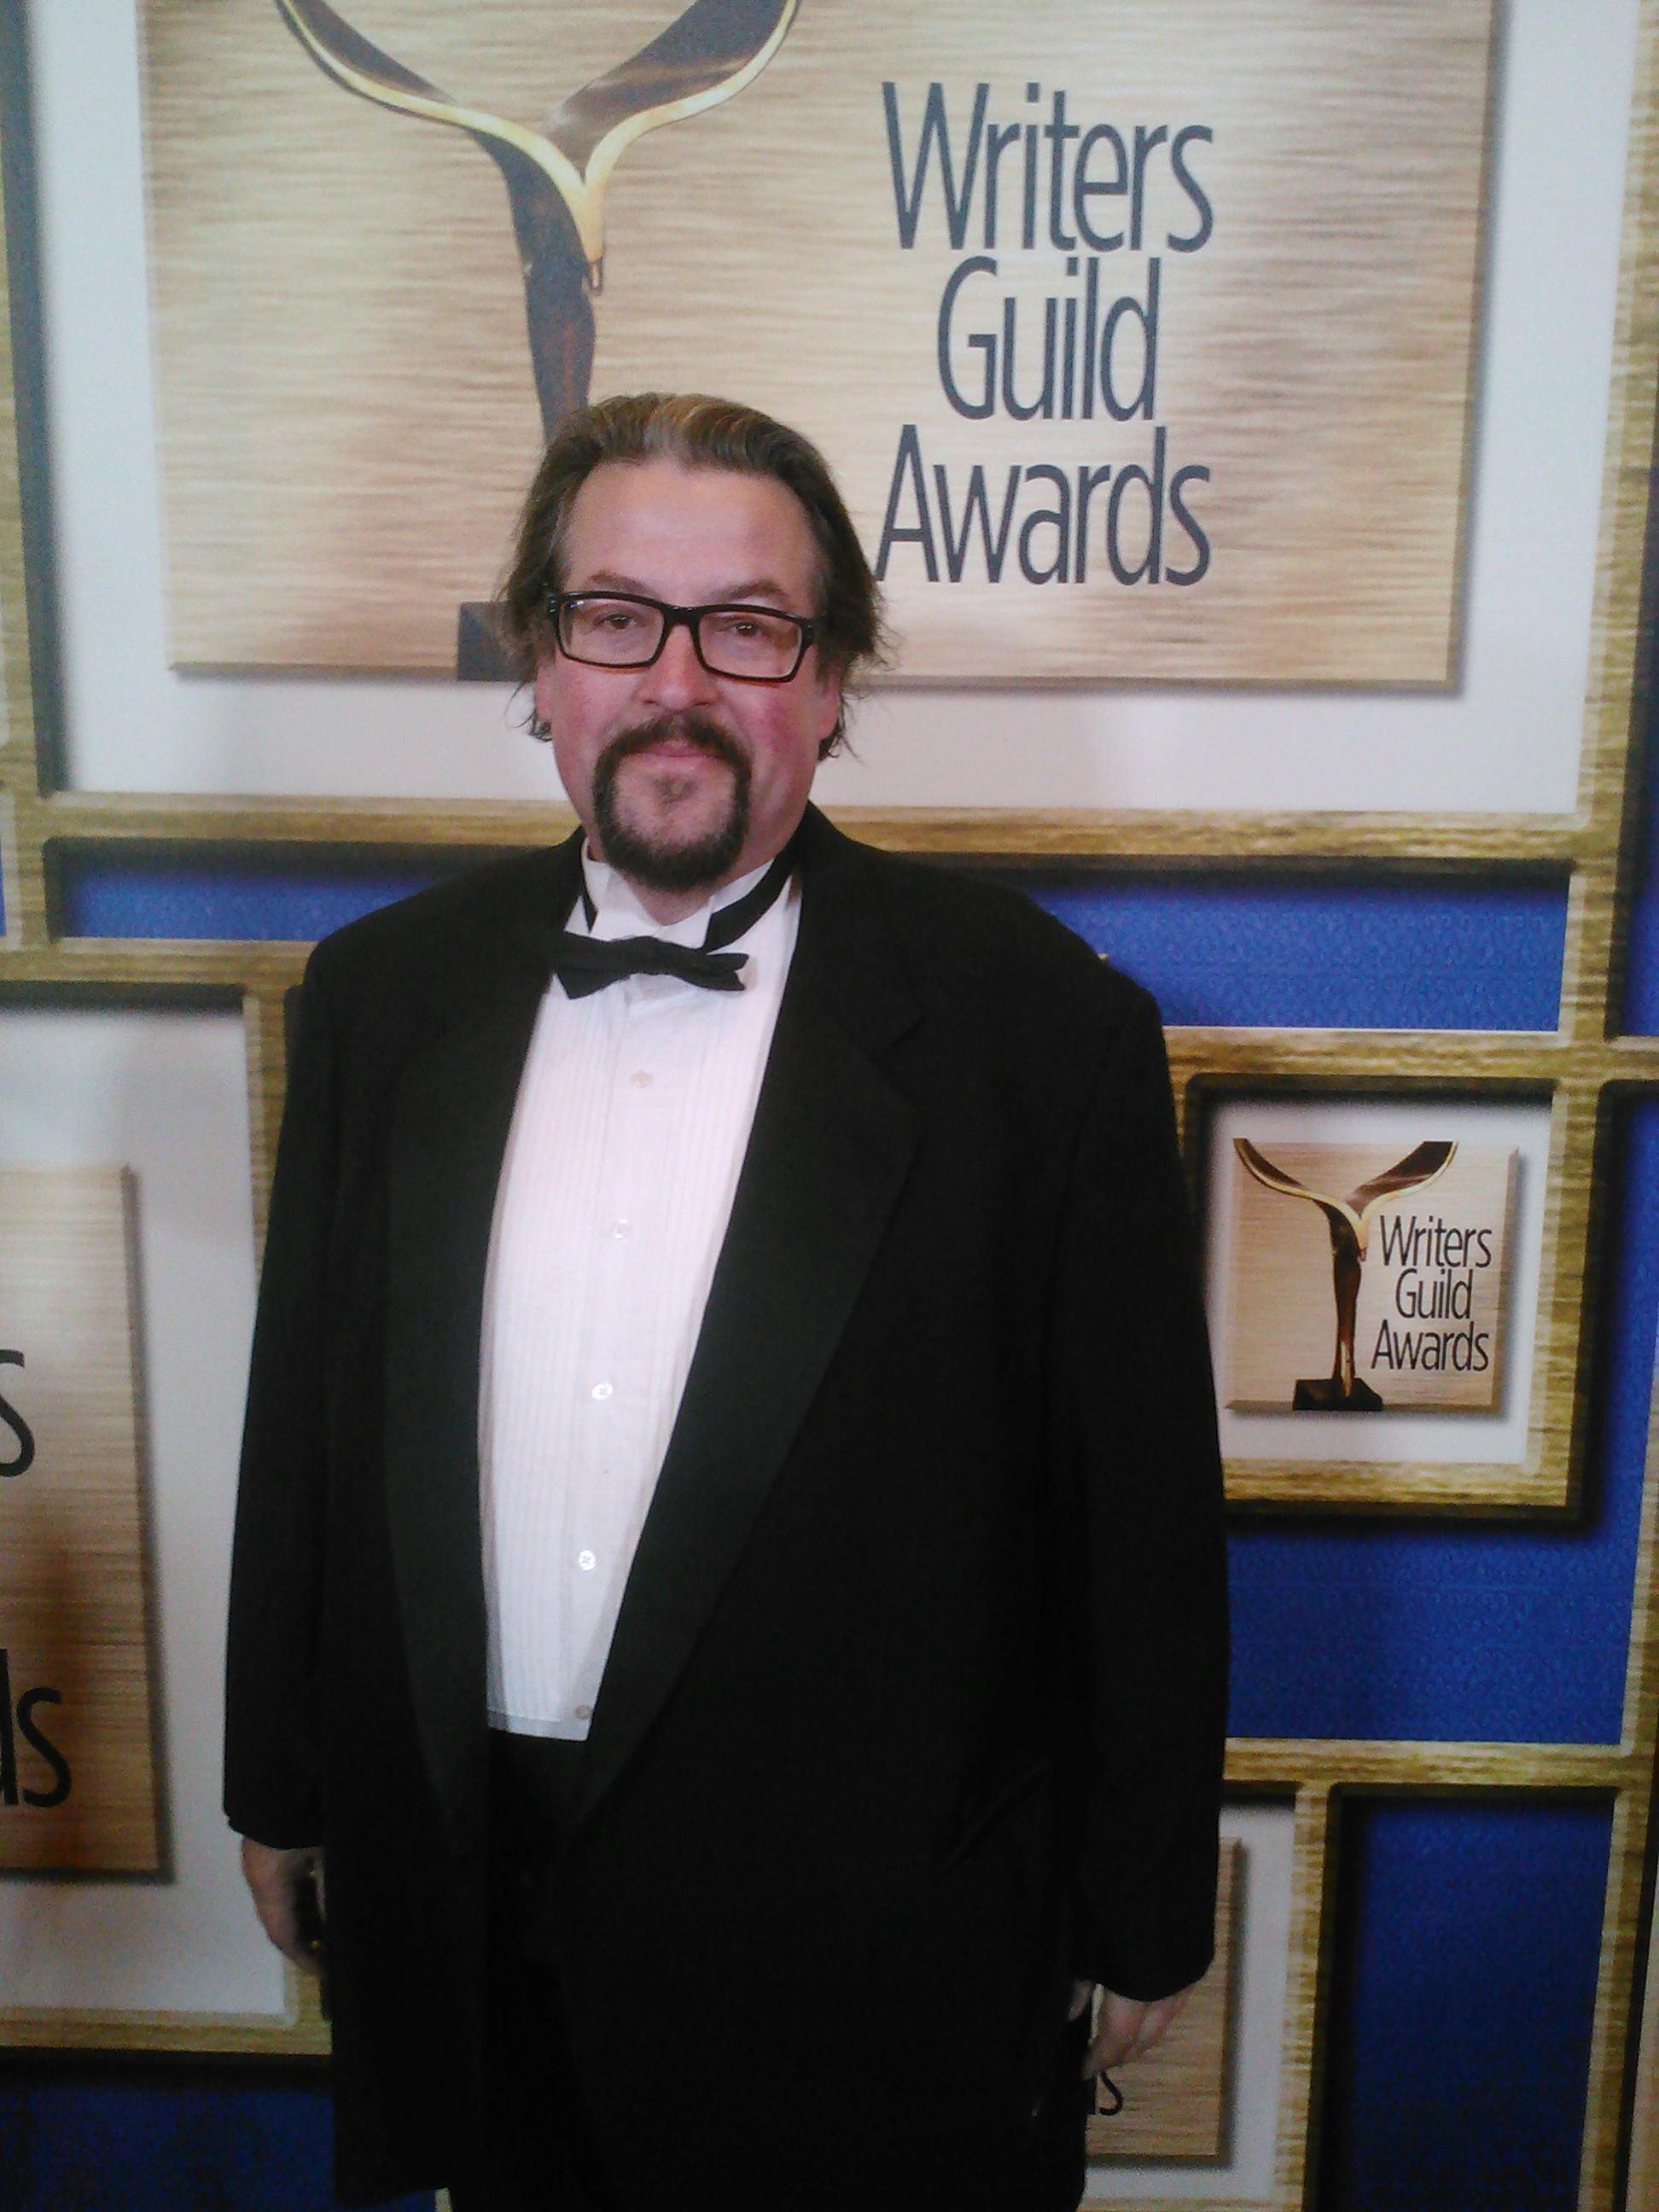 At the WGA Awards, 2014